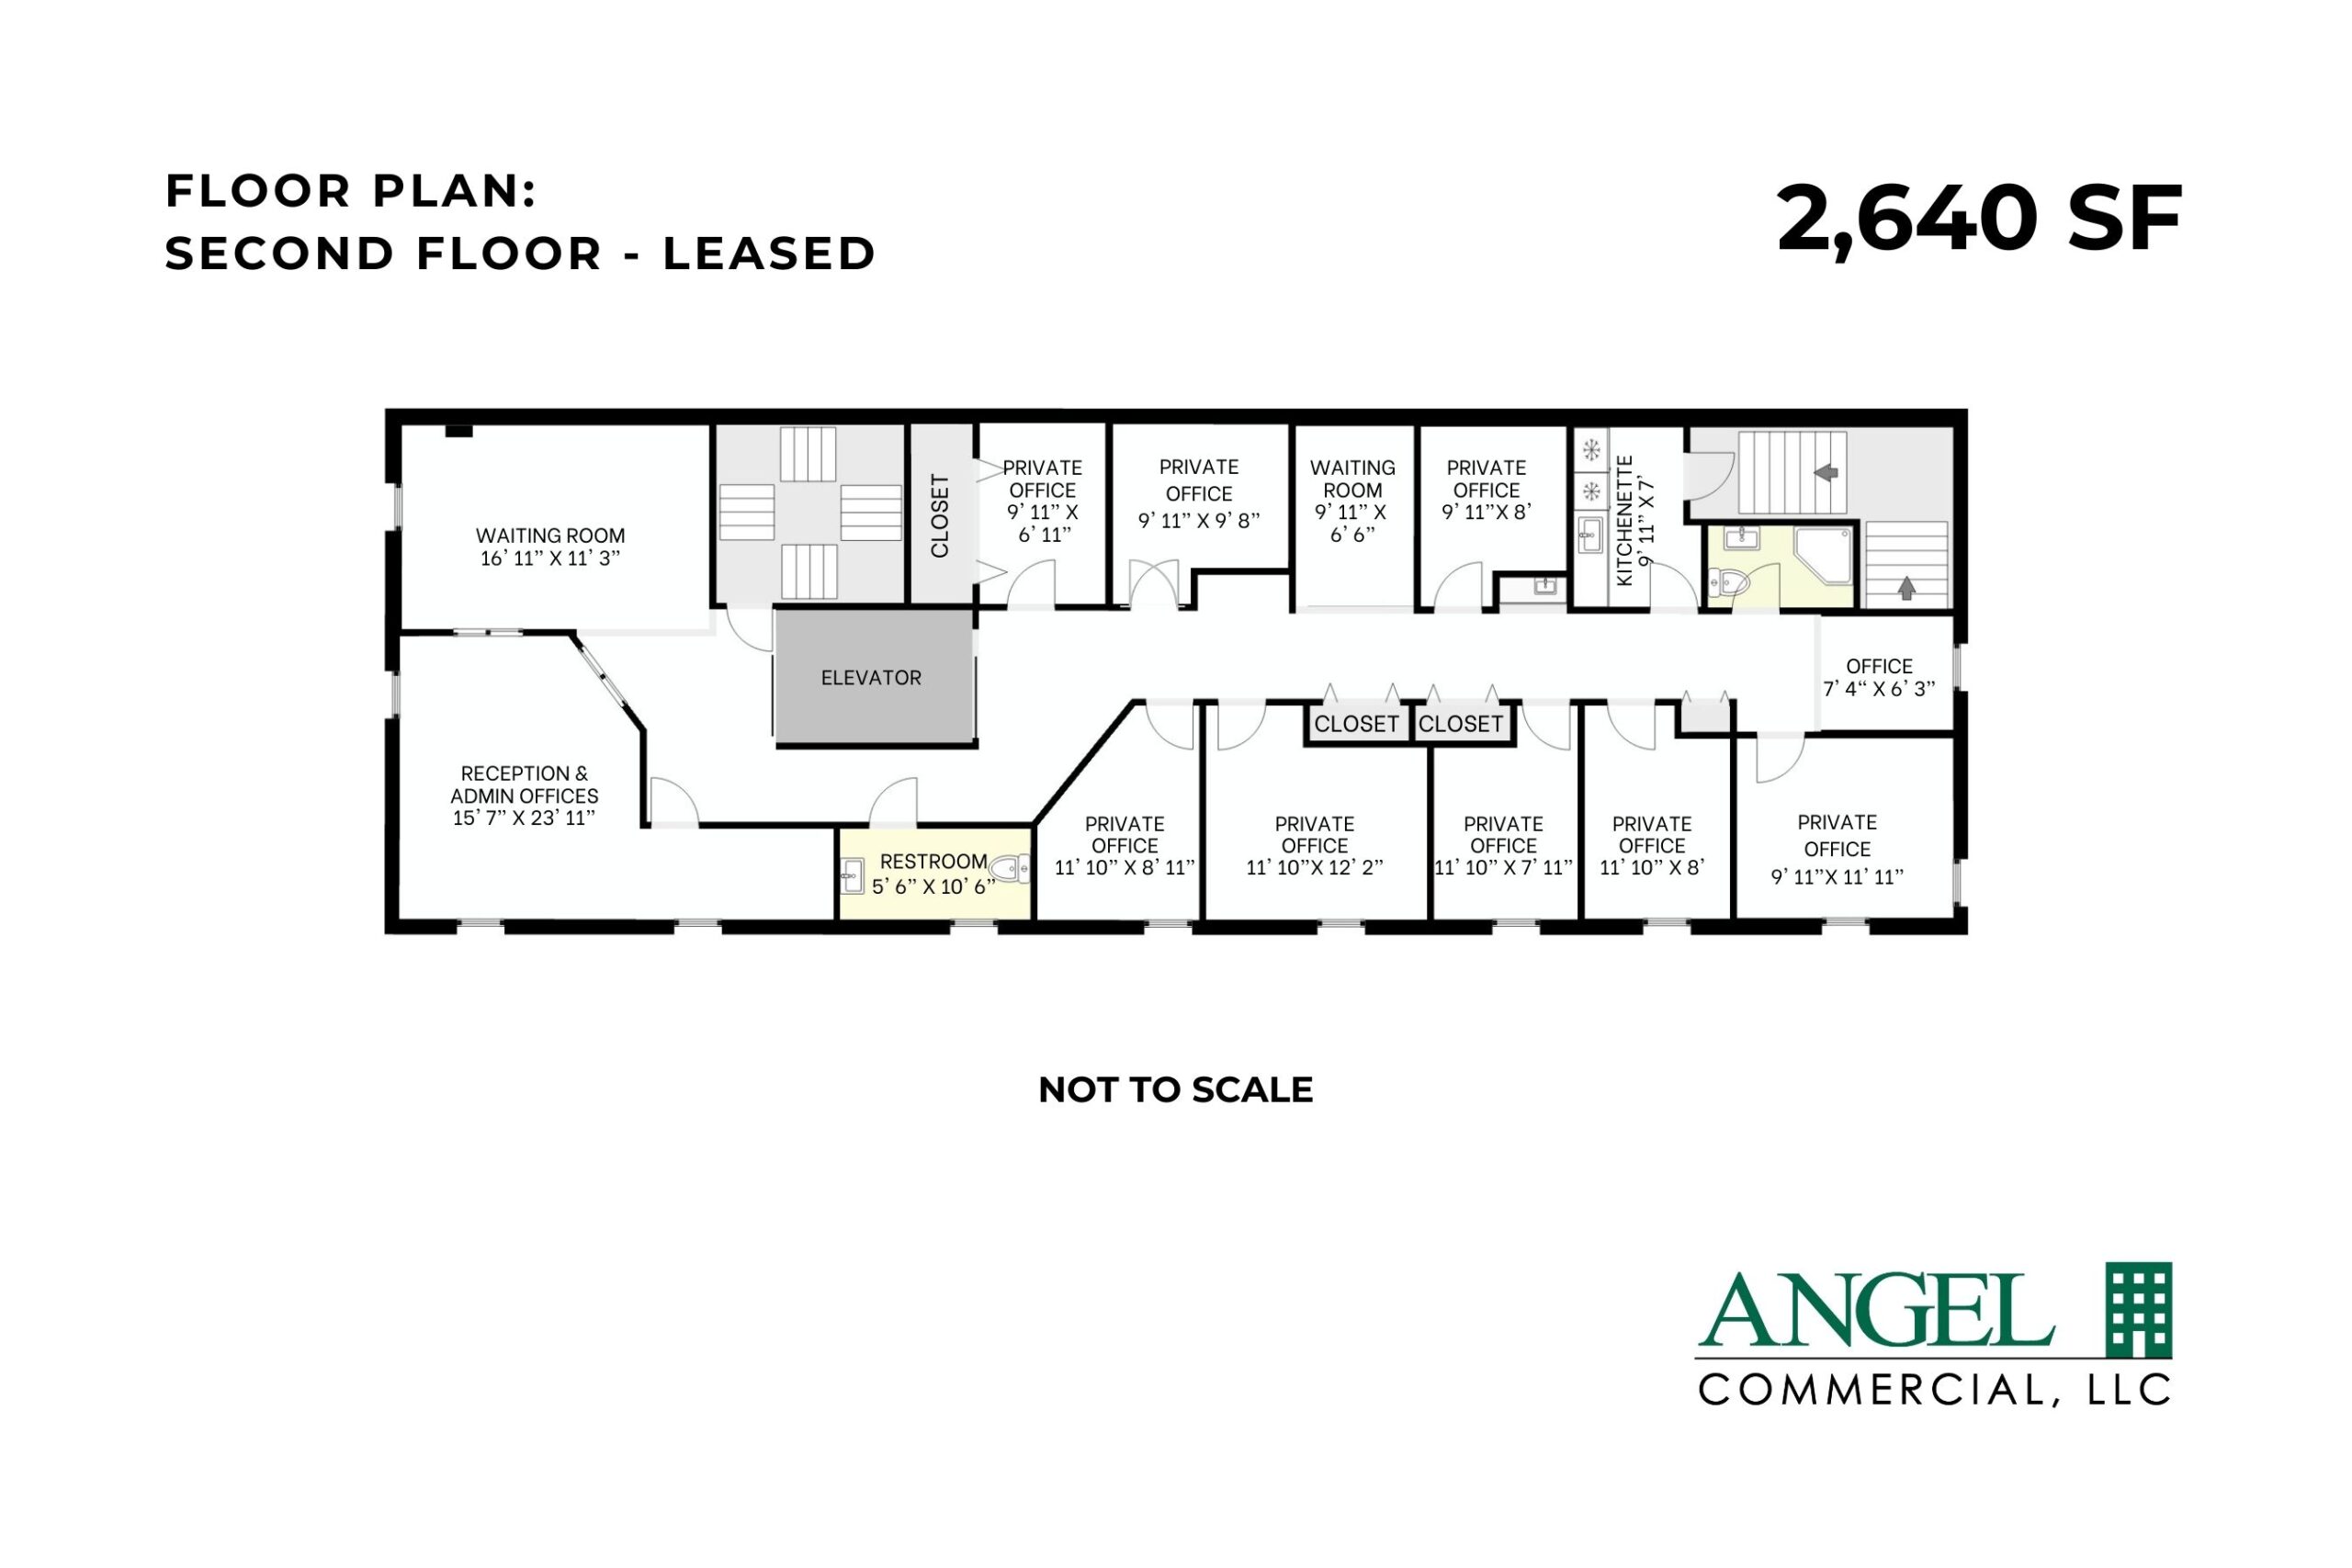 Floor Plan - Second Floor - 2,640 SF Leased